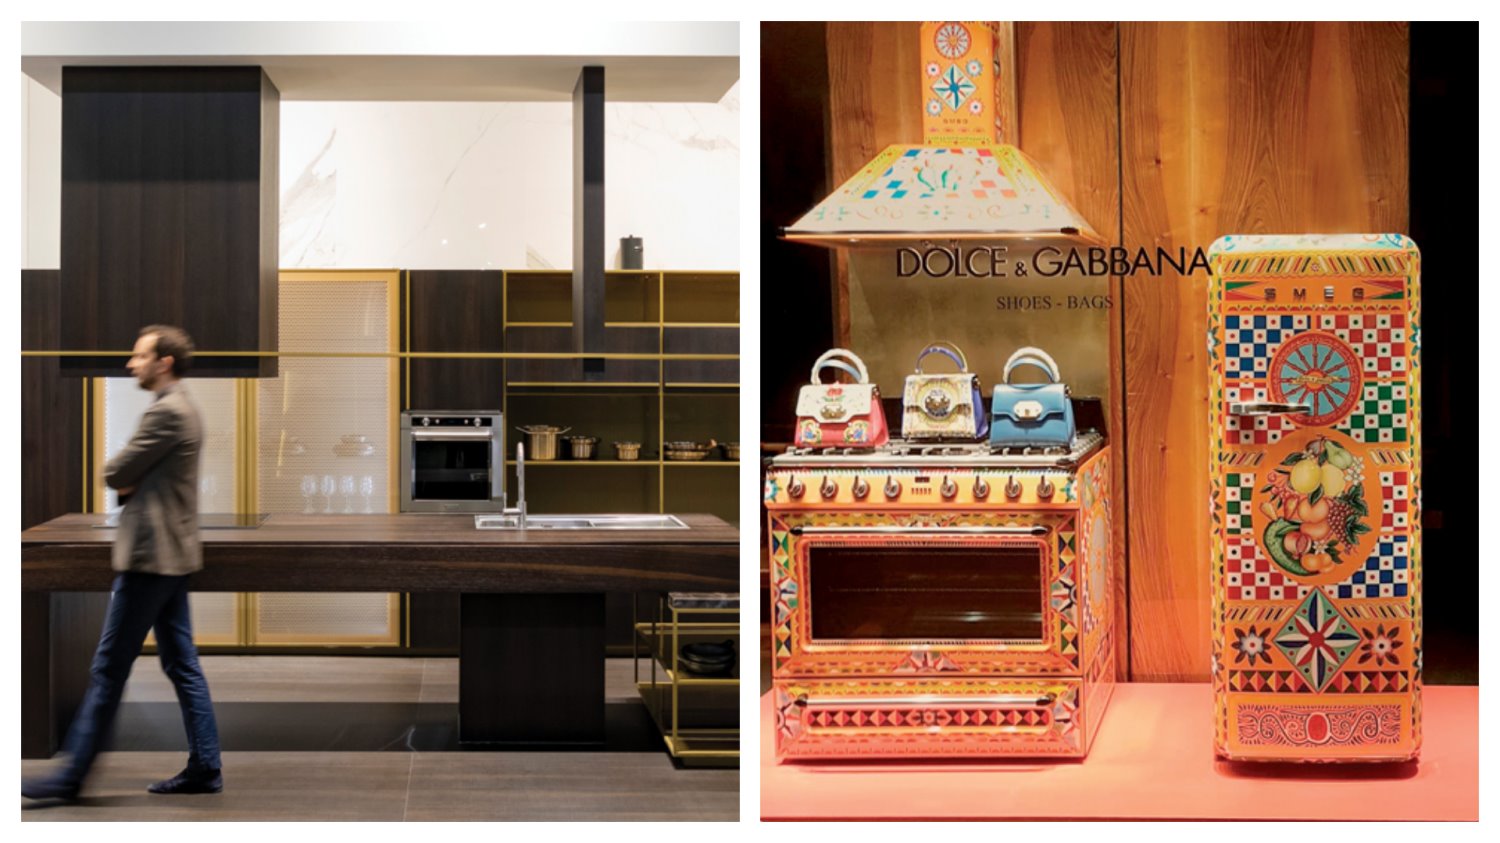 בלטו בצבעוניותם המקררים, קולטי האדים והתנורים הצבעוניים של Smeg, בשיתוף Dolce & Gabbana. בתצוגה כיכבו מטבחים כהים, עם איים ומדפים. צילום: Salone del Mobile